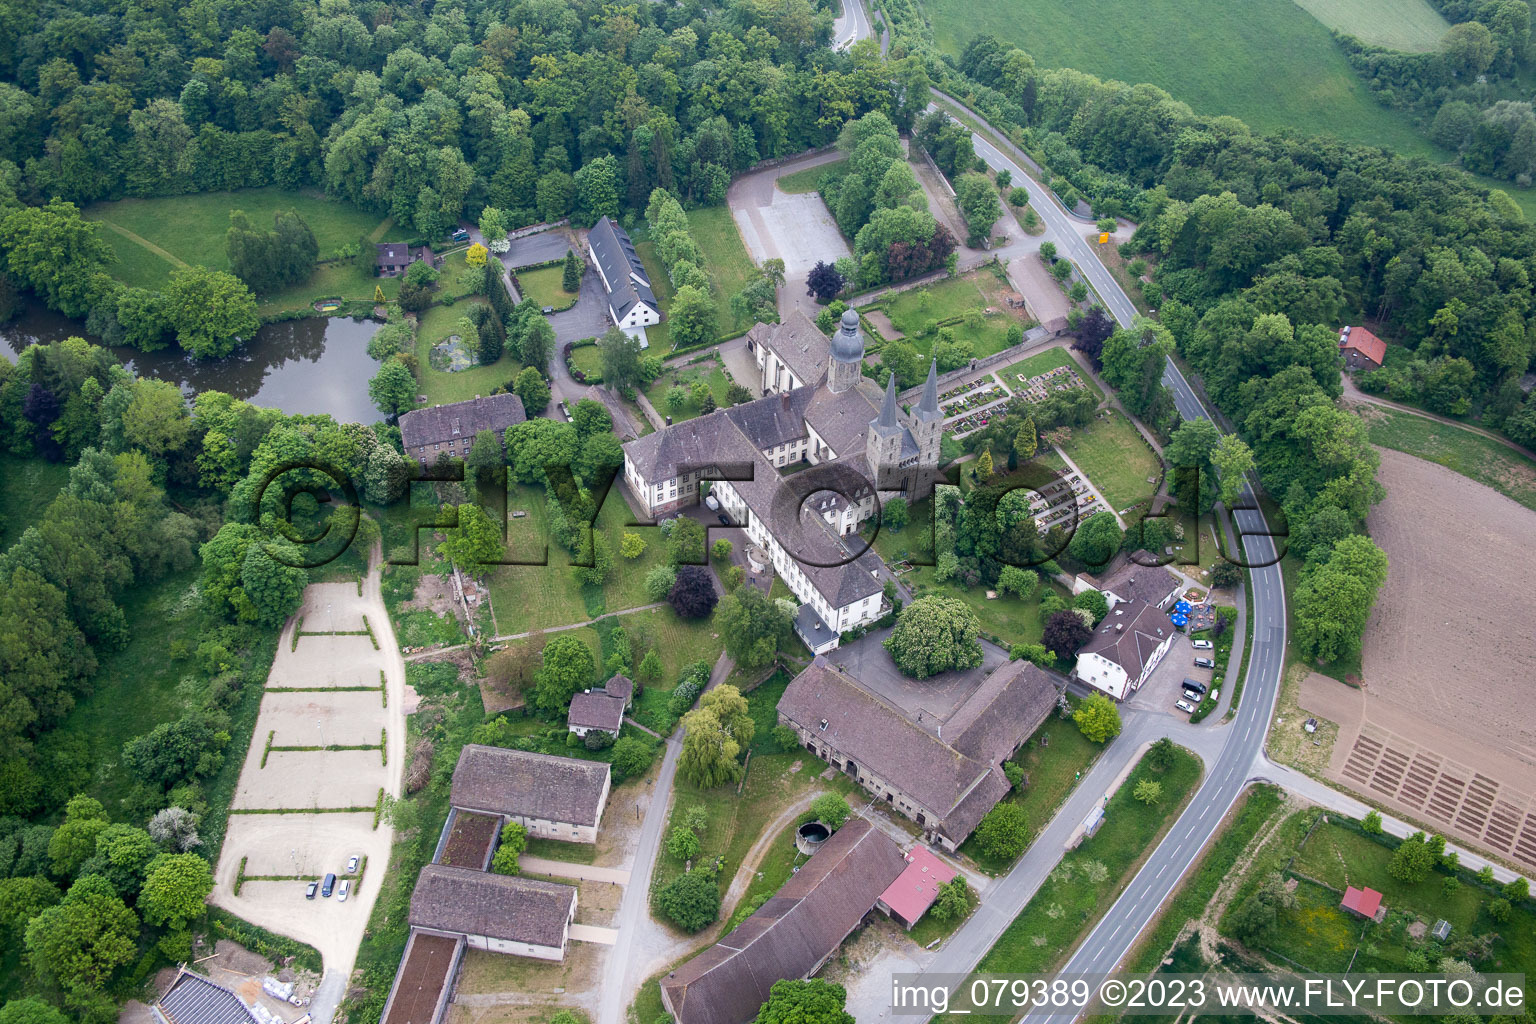 Aerial view of Marienmünster in the state North Rhine-Westphalia, Germany